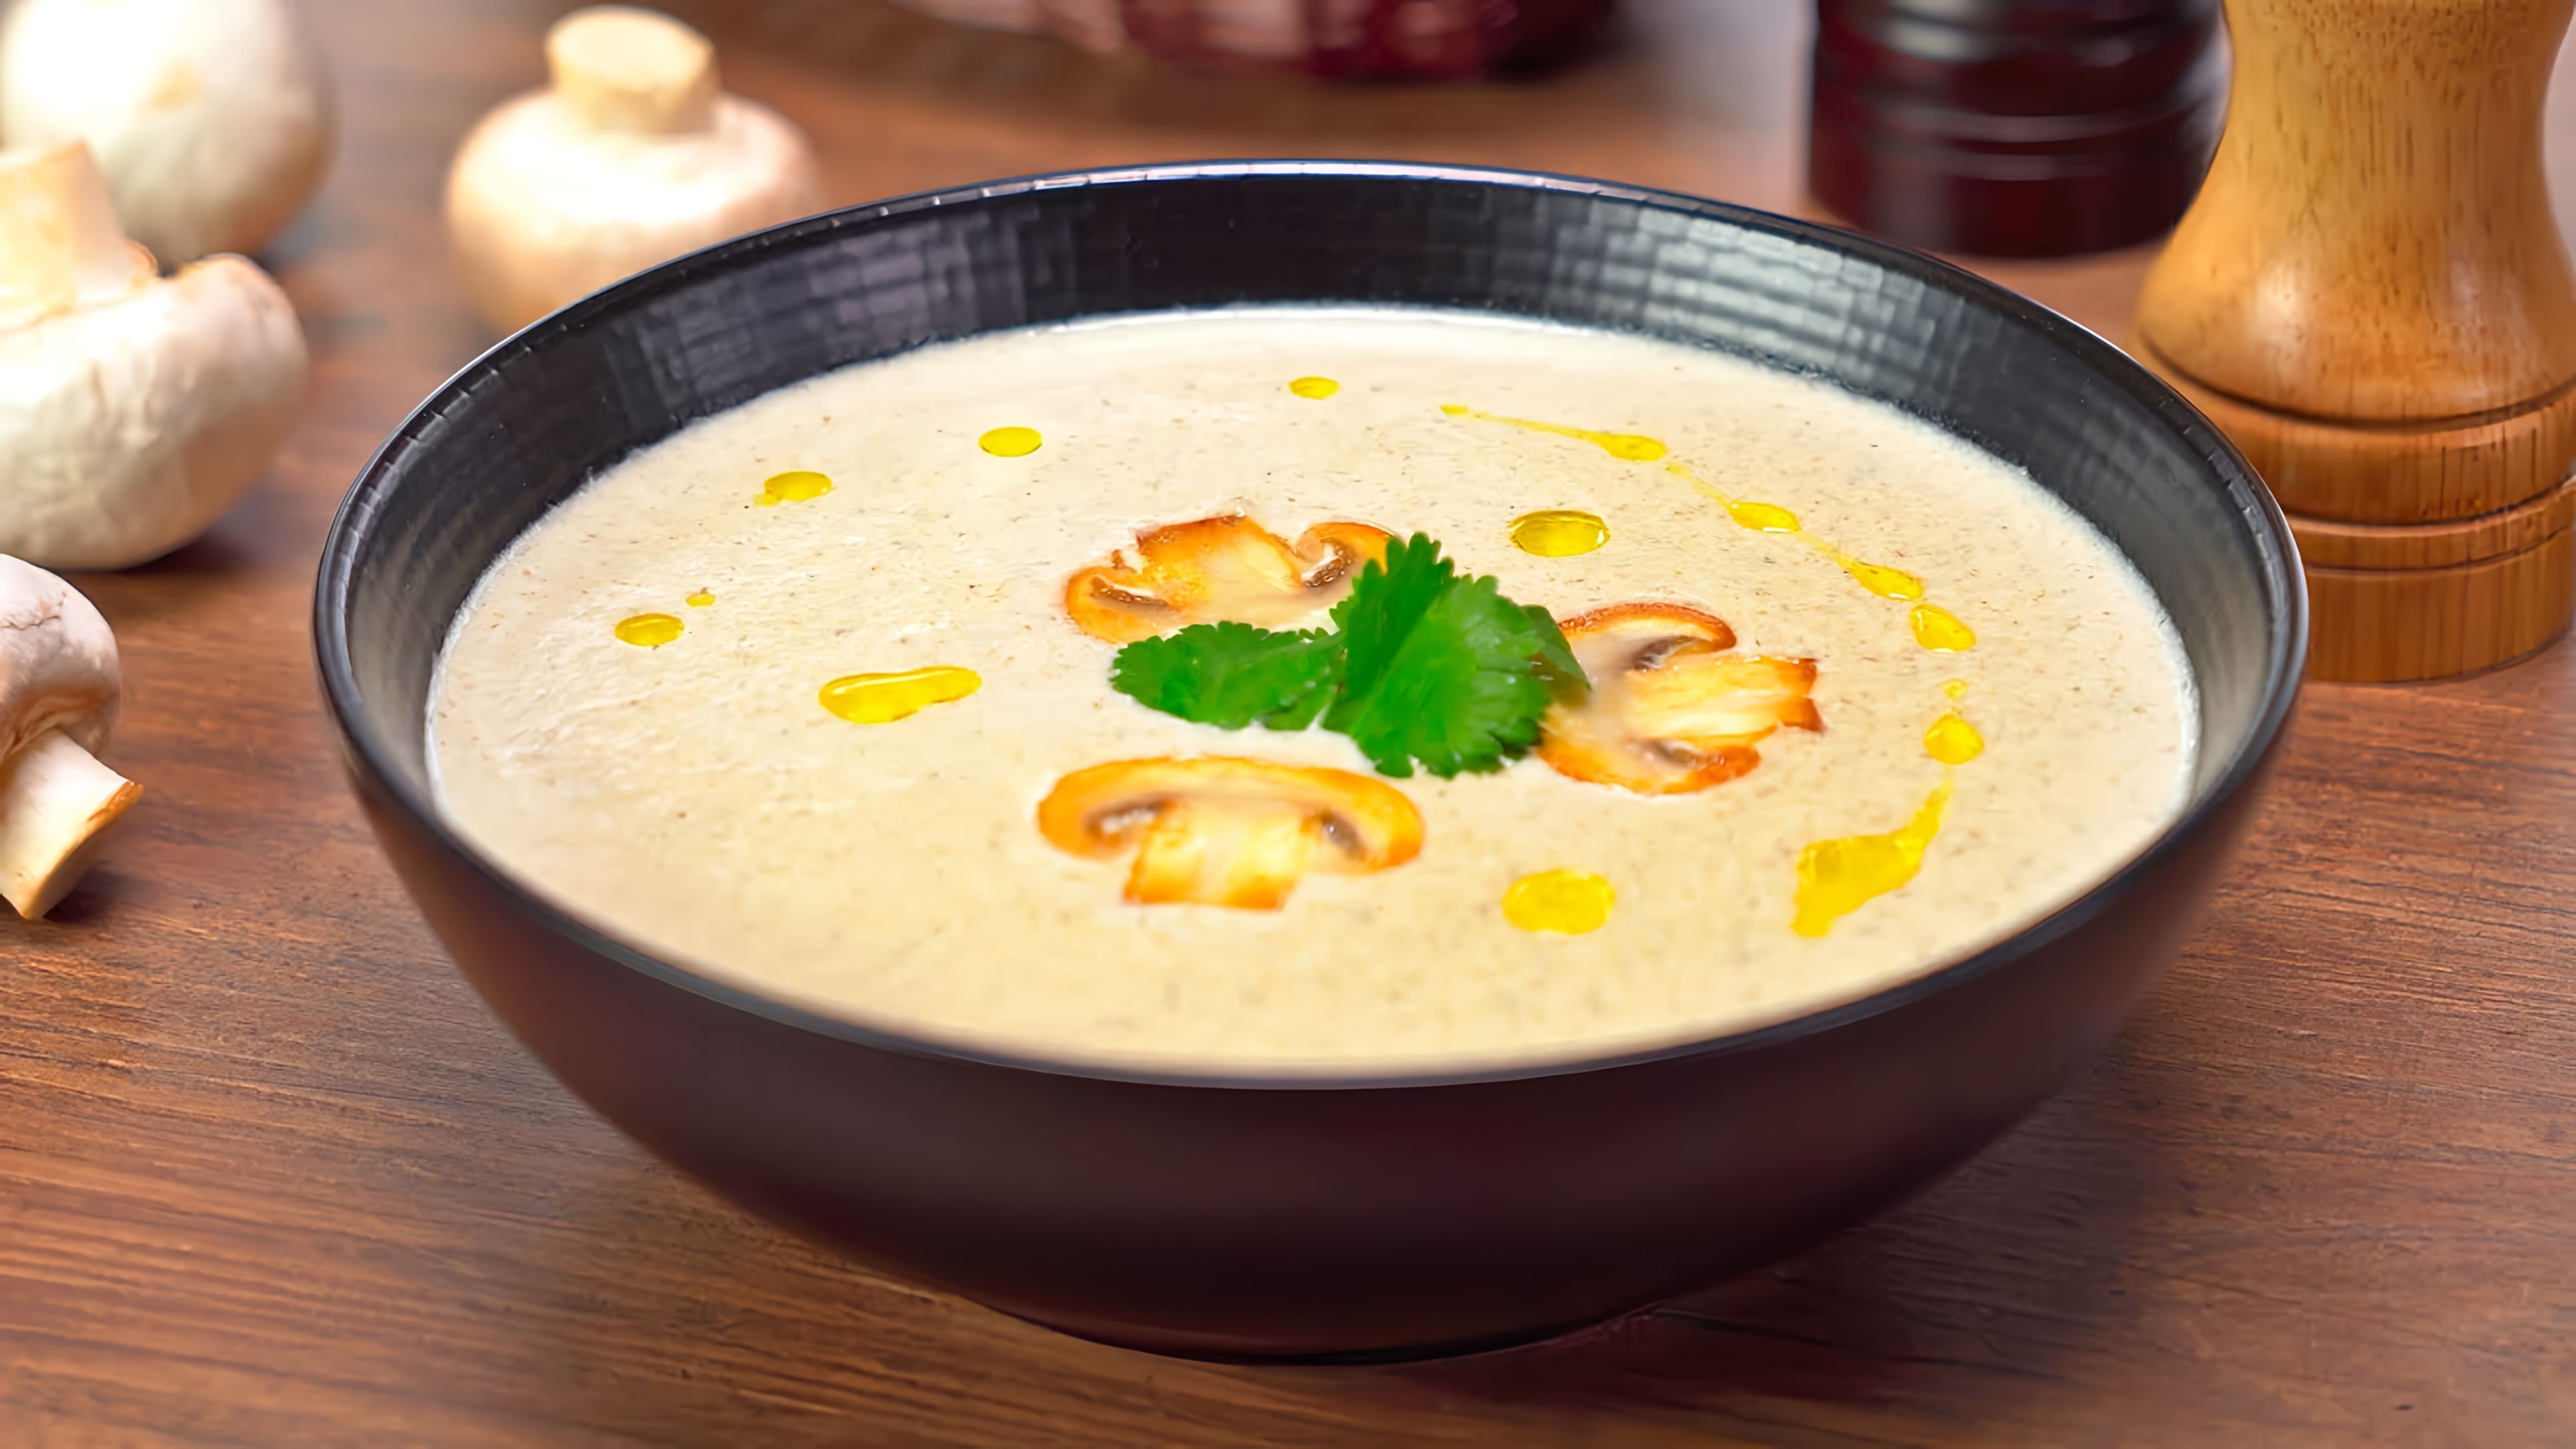 В этом видео демонстрируется рецепт приготовления крем-супа из шампиньонов